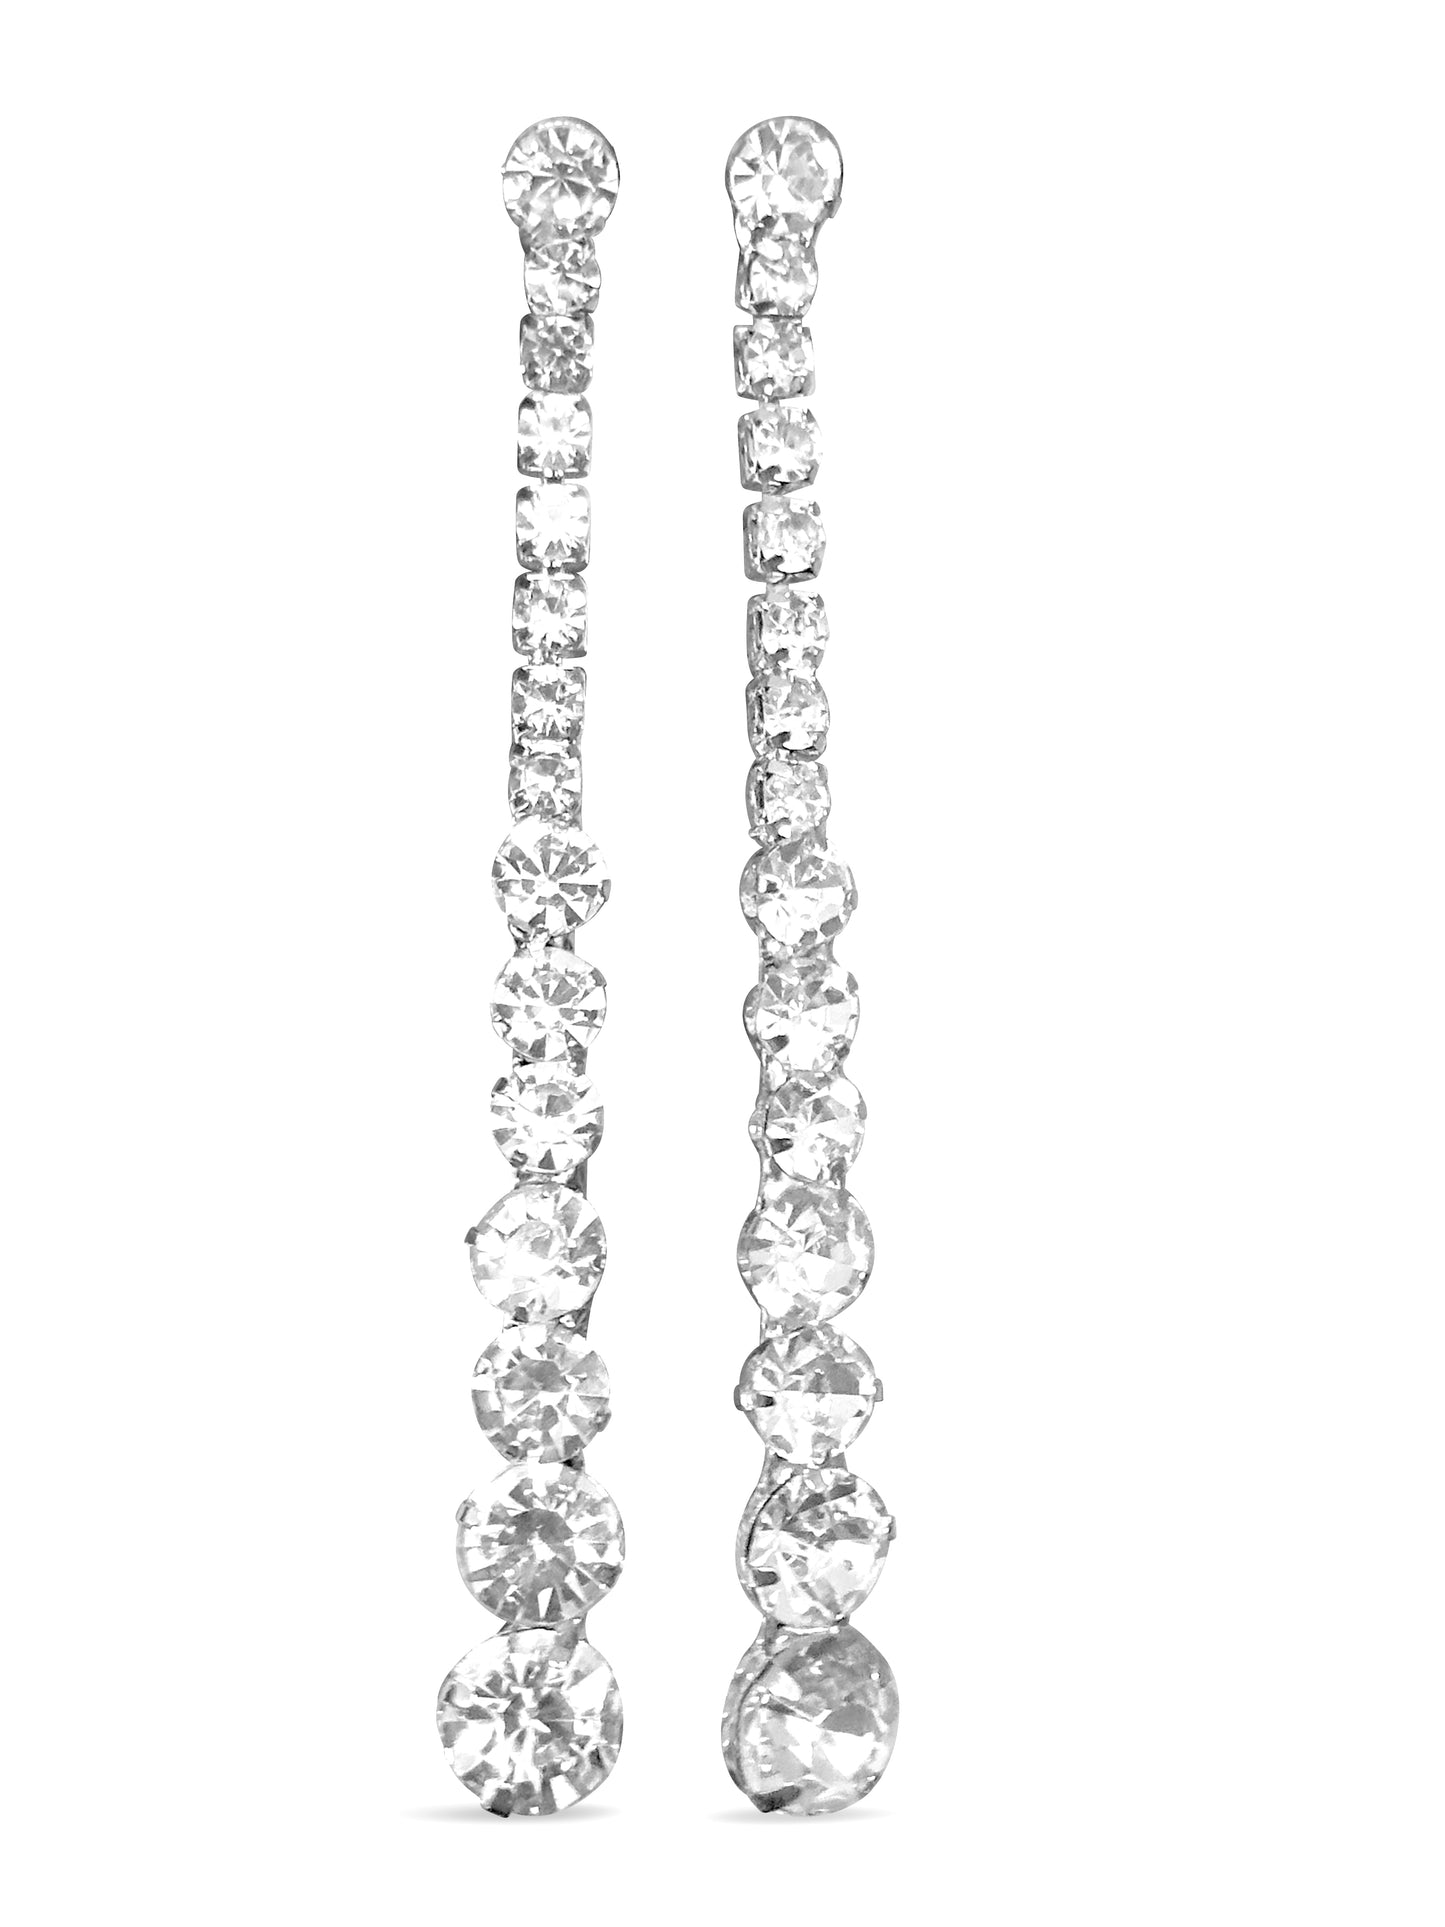 Long Elegant Crystal Diamante Rhinestone Teardrop Stud Earrings